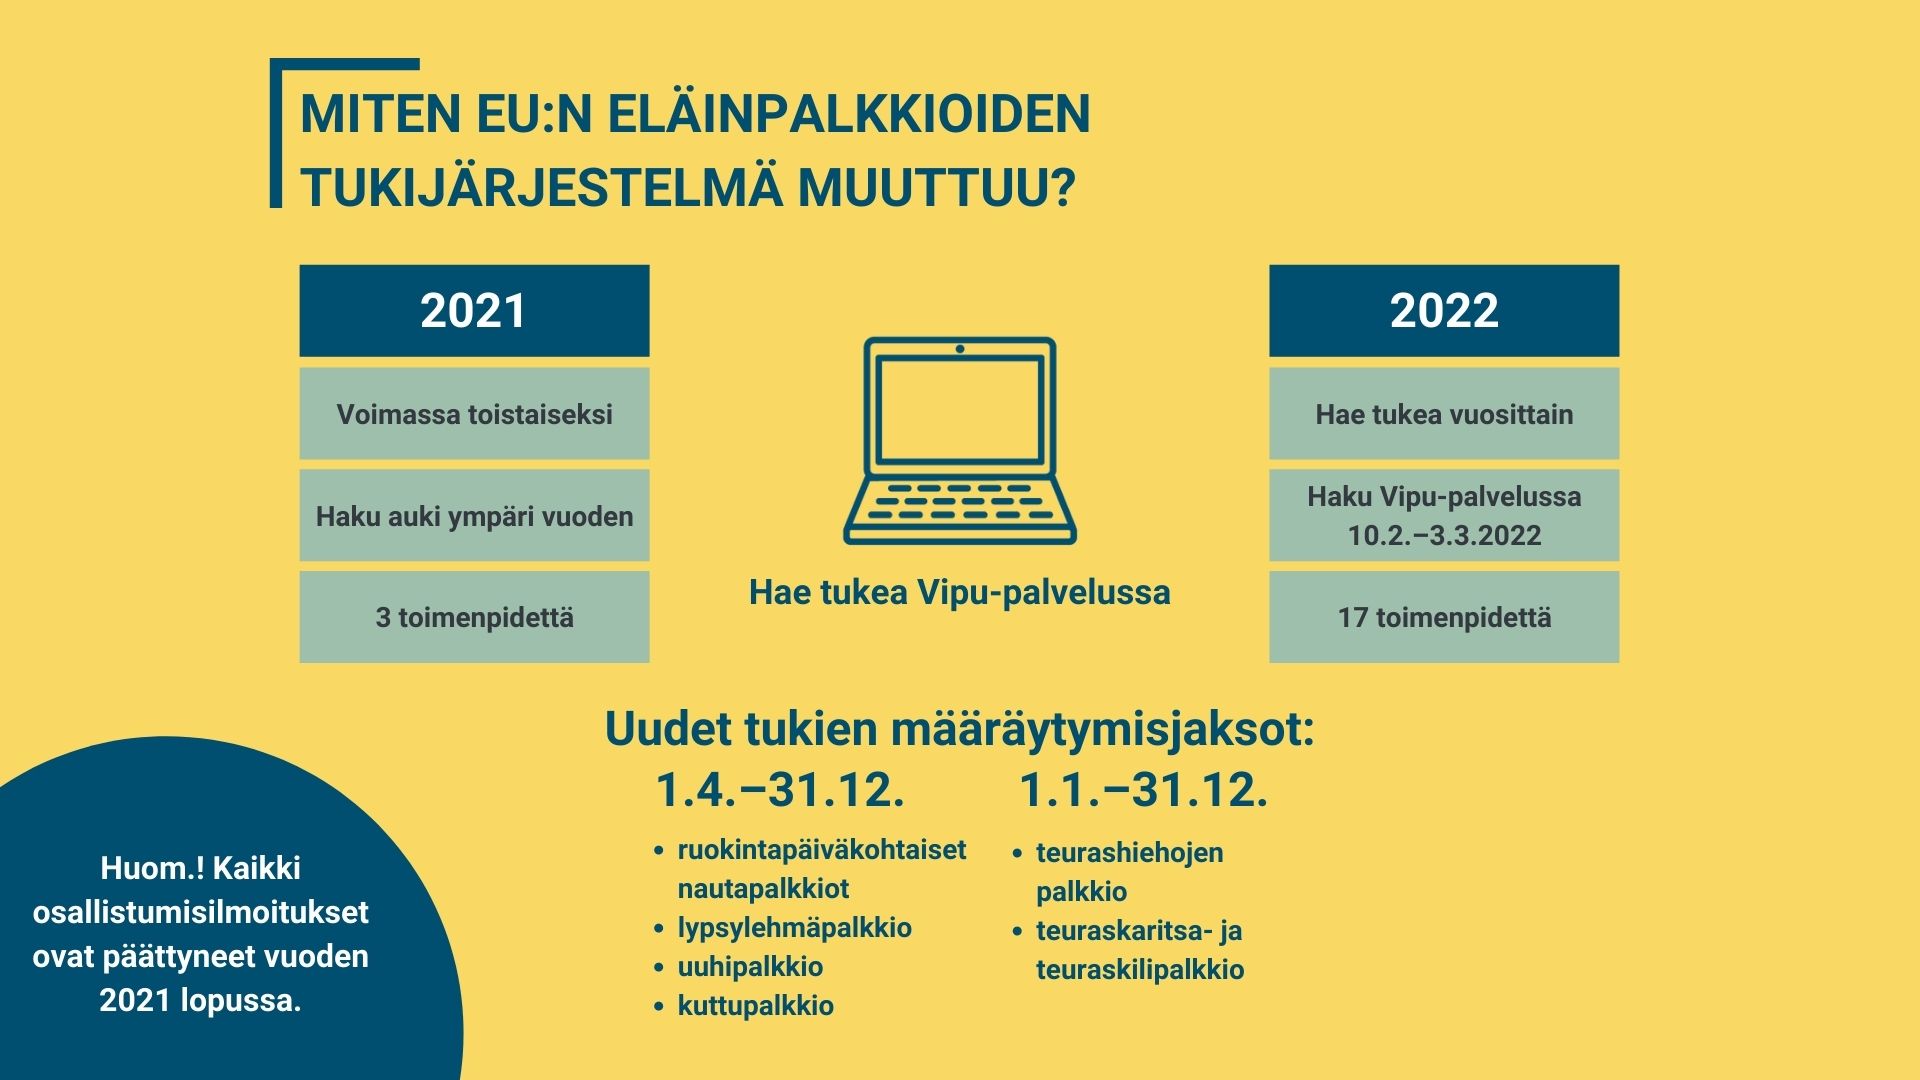 Piirroskuva tietokoneesta ja tekstit: Miten EU:n eläinpalkkioiden tukijärjestelmä muuttuu? 2021: Voimassa toistaiseksi, haku auki ympäri vuoden, 3 toimenpidettä. 2022: Hae tukea vuosittain, hakuaika tammikuussa, 17 toimenpidettä.